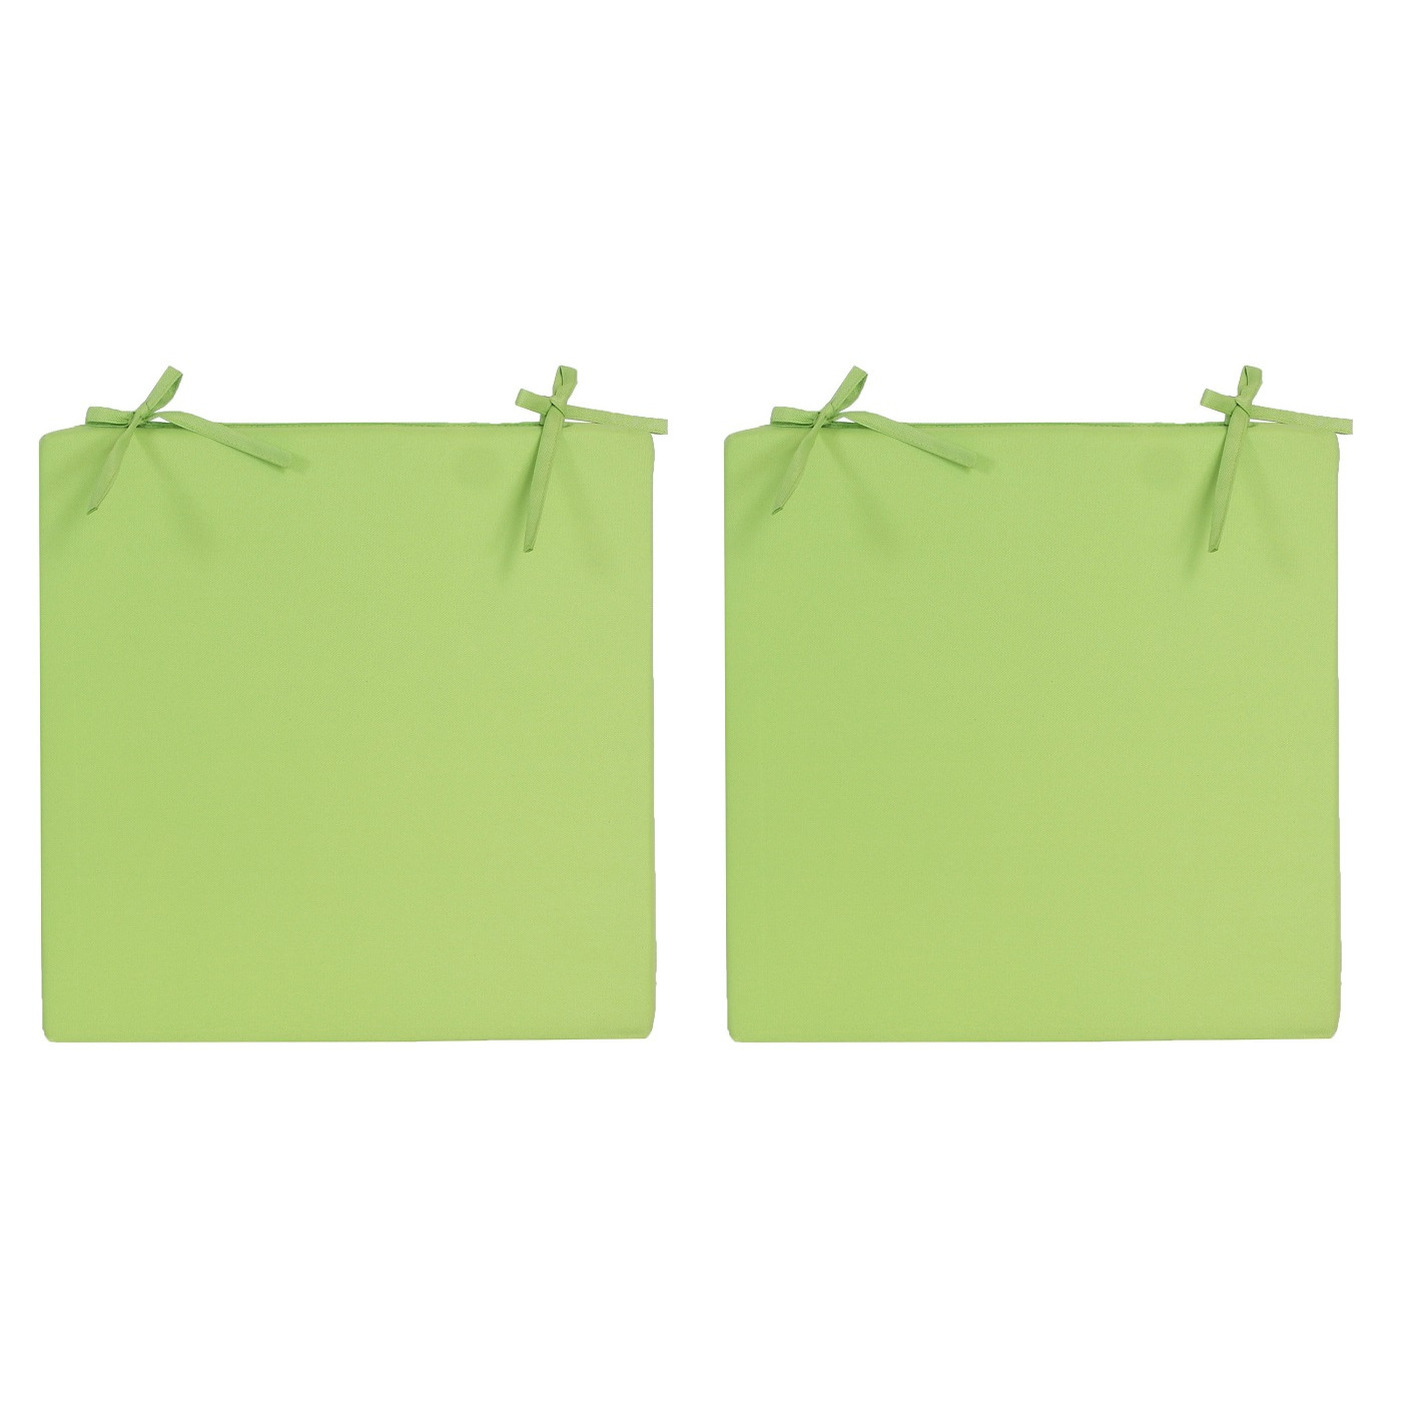 4x Stoelkussens voor binnen en buiten in de kleur groen 40 x 40 cm Tuinkussens voor buitenstoelen.